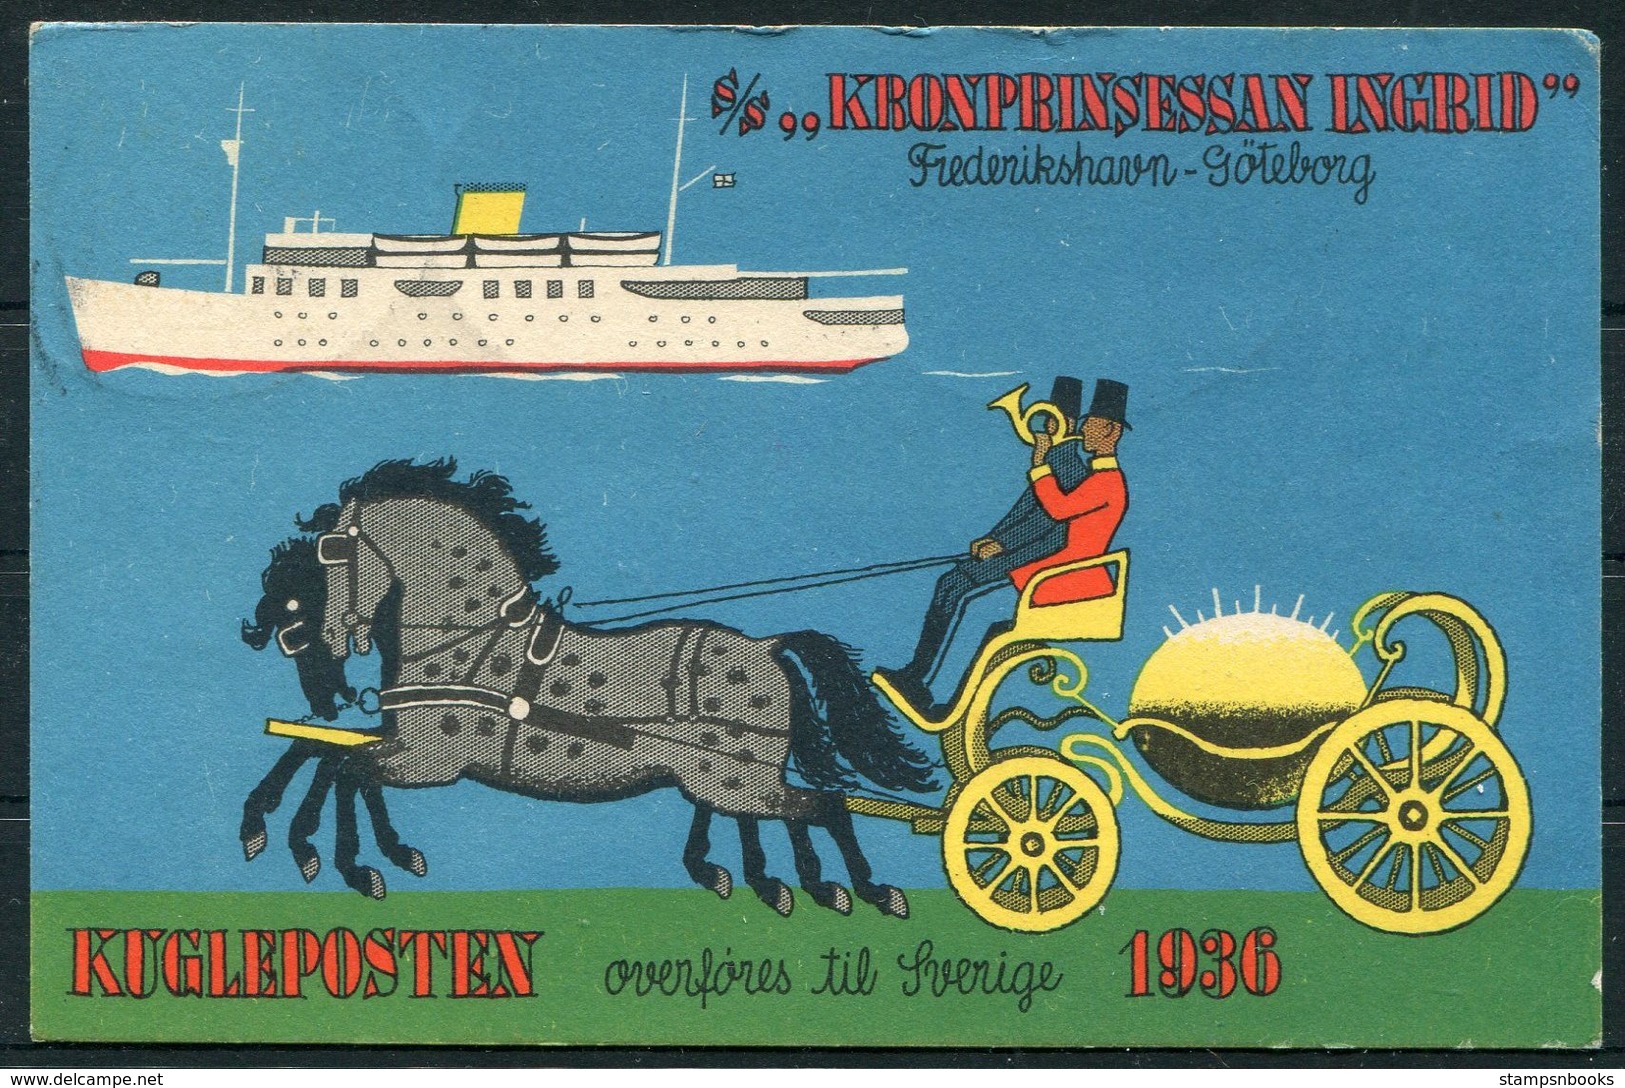 1936 Denmark S/S KRONPRINSESSAN INGRID Ship Postcard. Kugleposten Frederikshavn - Goteborg. HC Andersen Mermaid - Covers & Documents